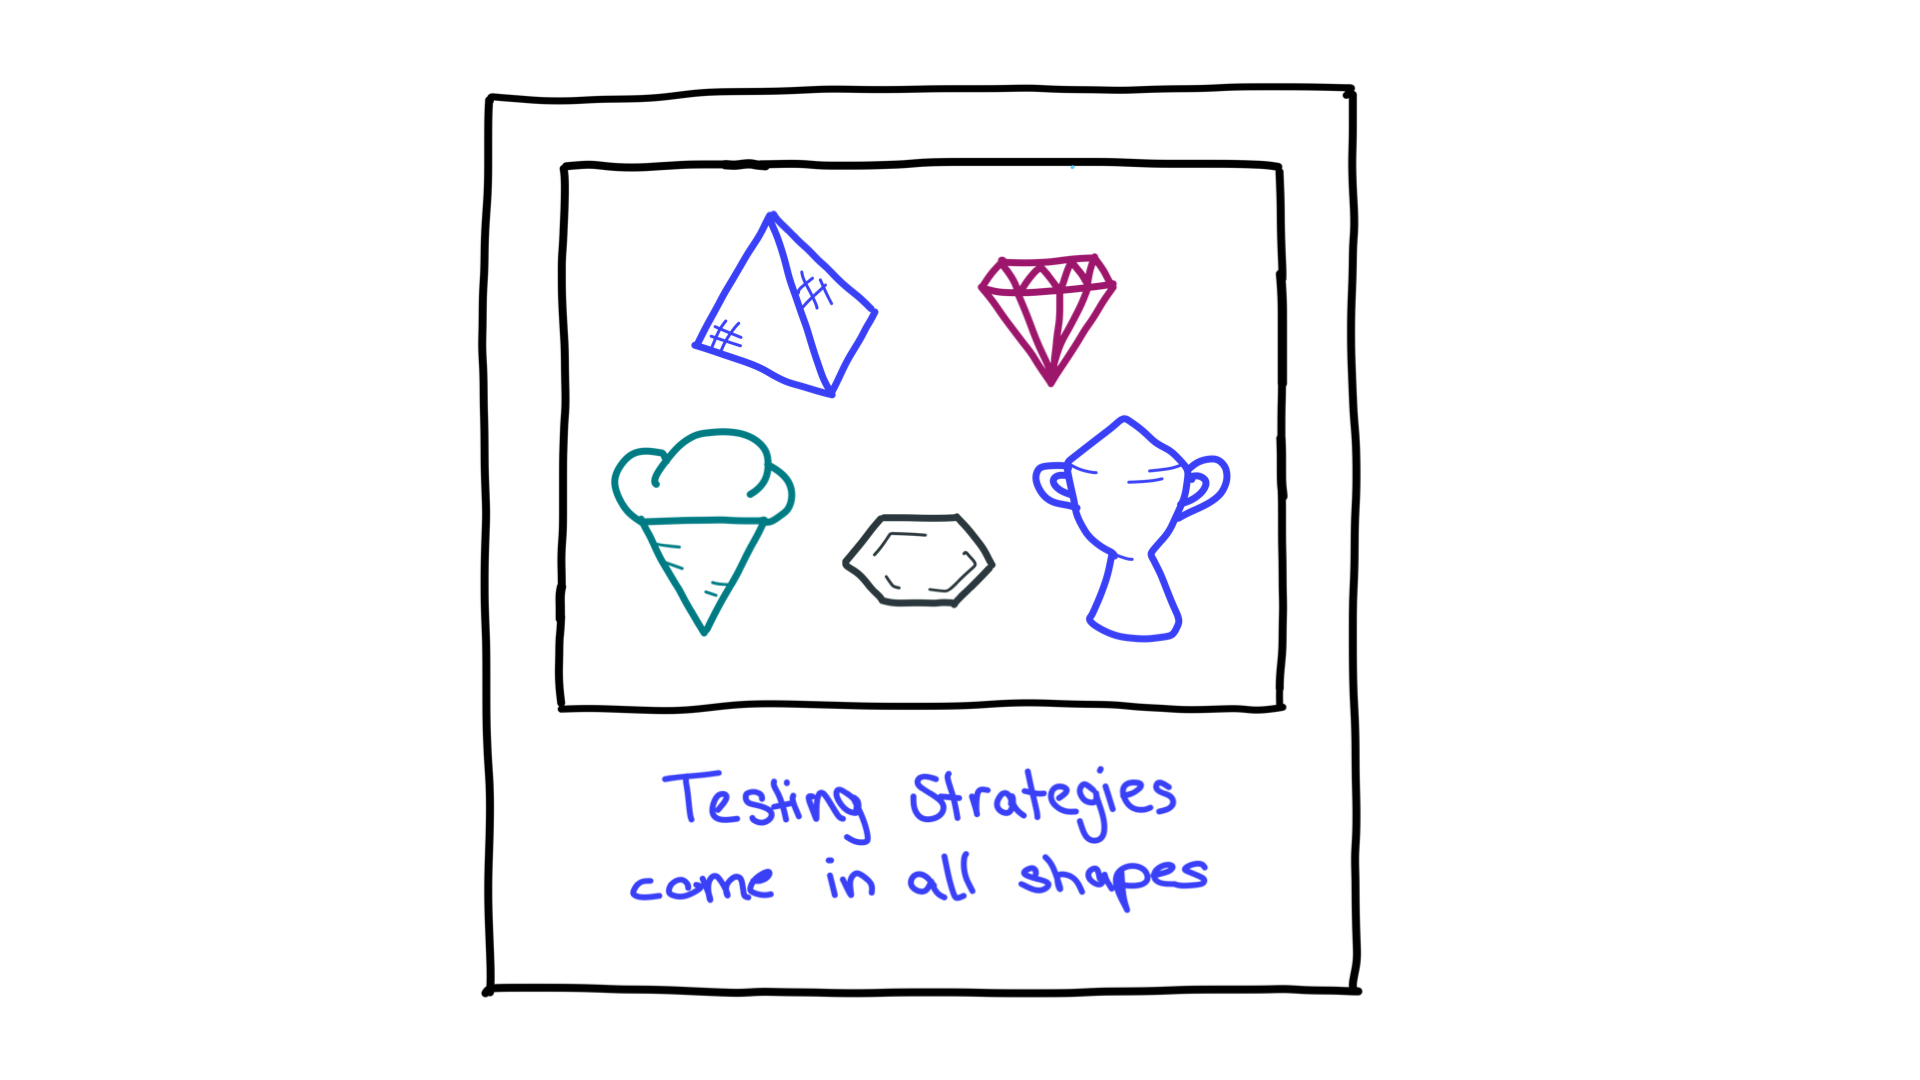 Nhiều hình dạng như kim tự tháp, kim cương, nón băng, tổ ong và một chiếc cúp; đại diện cho các chiến lược thử nghiệm.